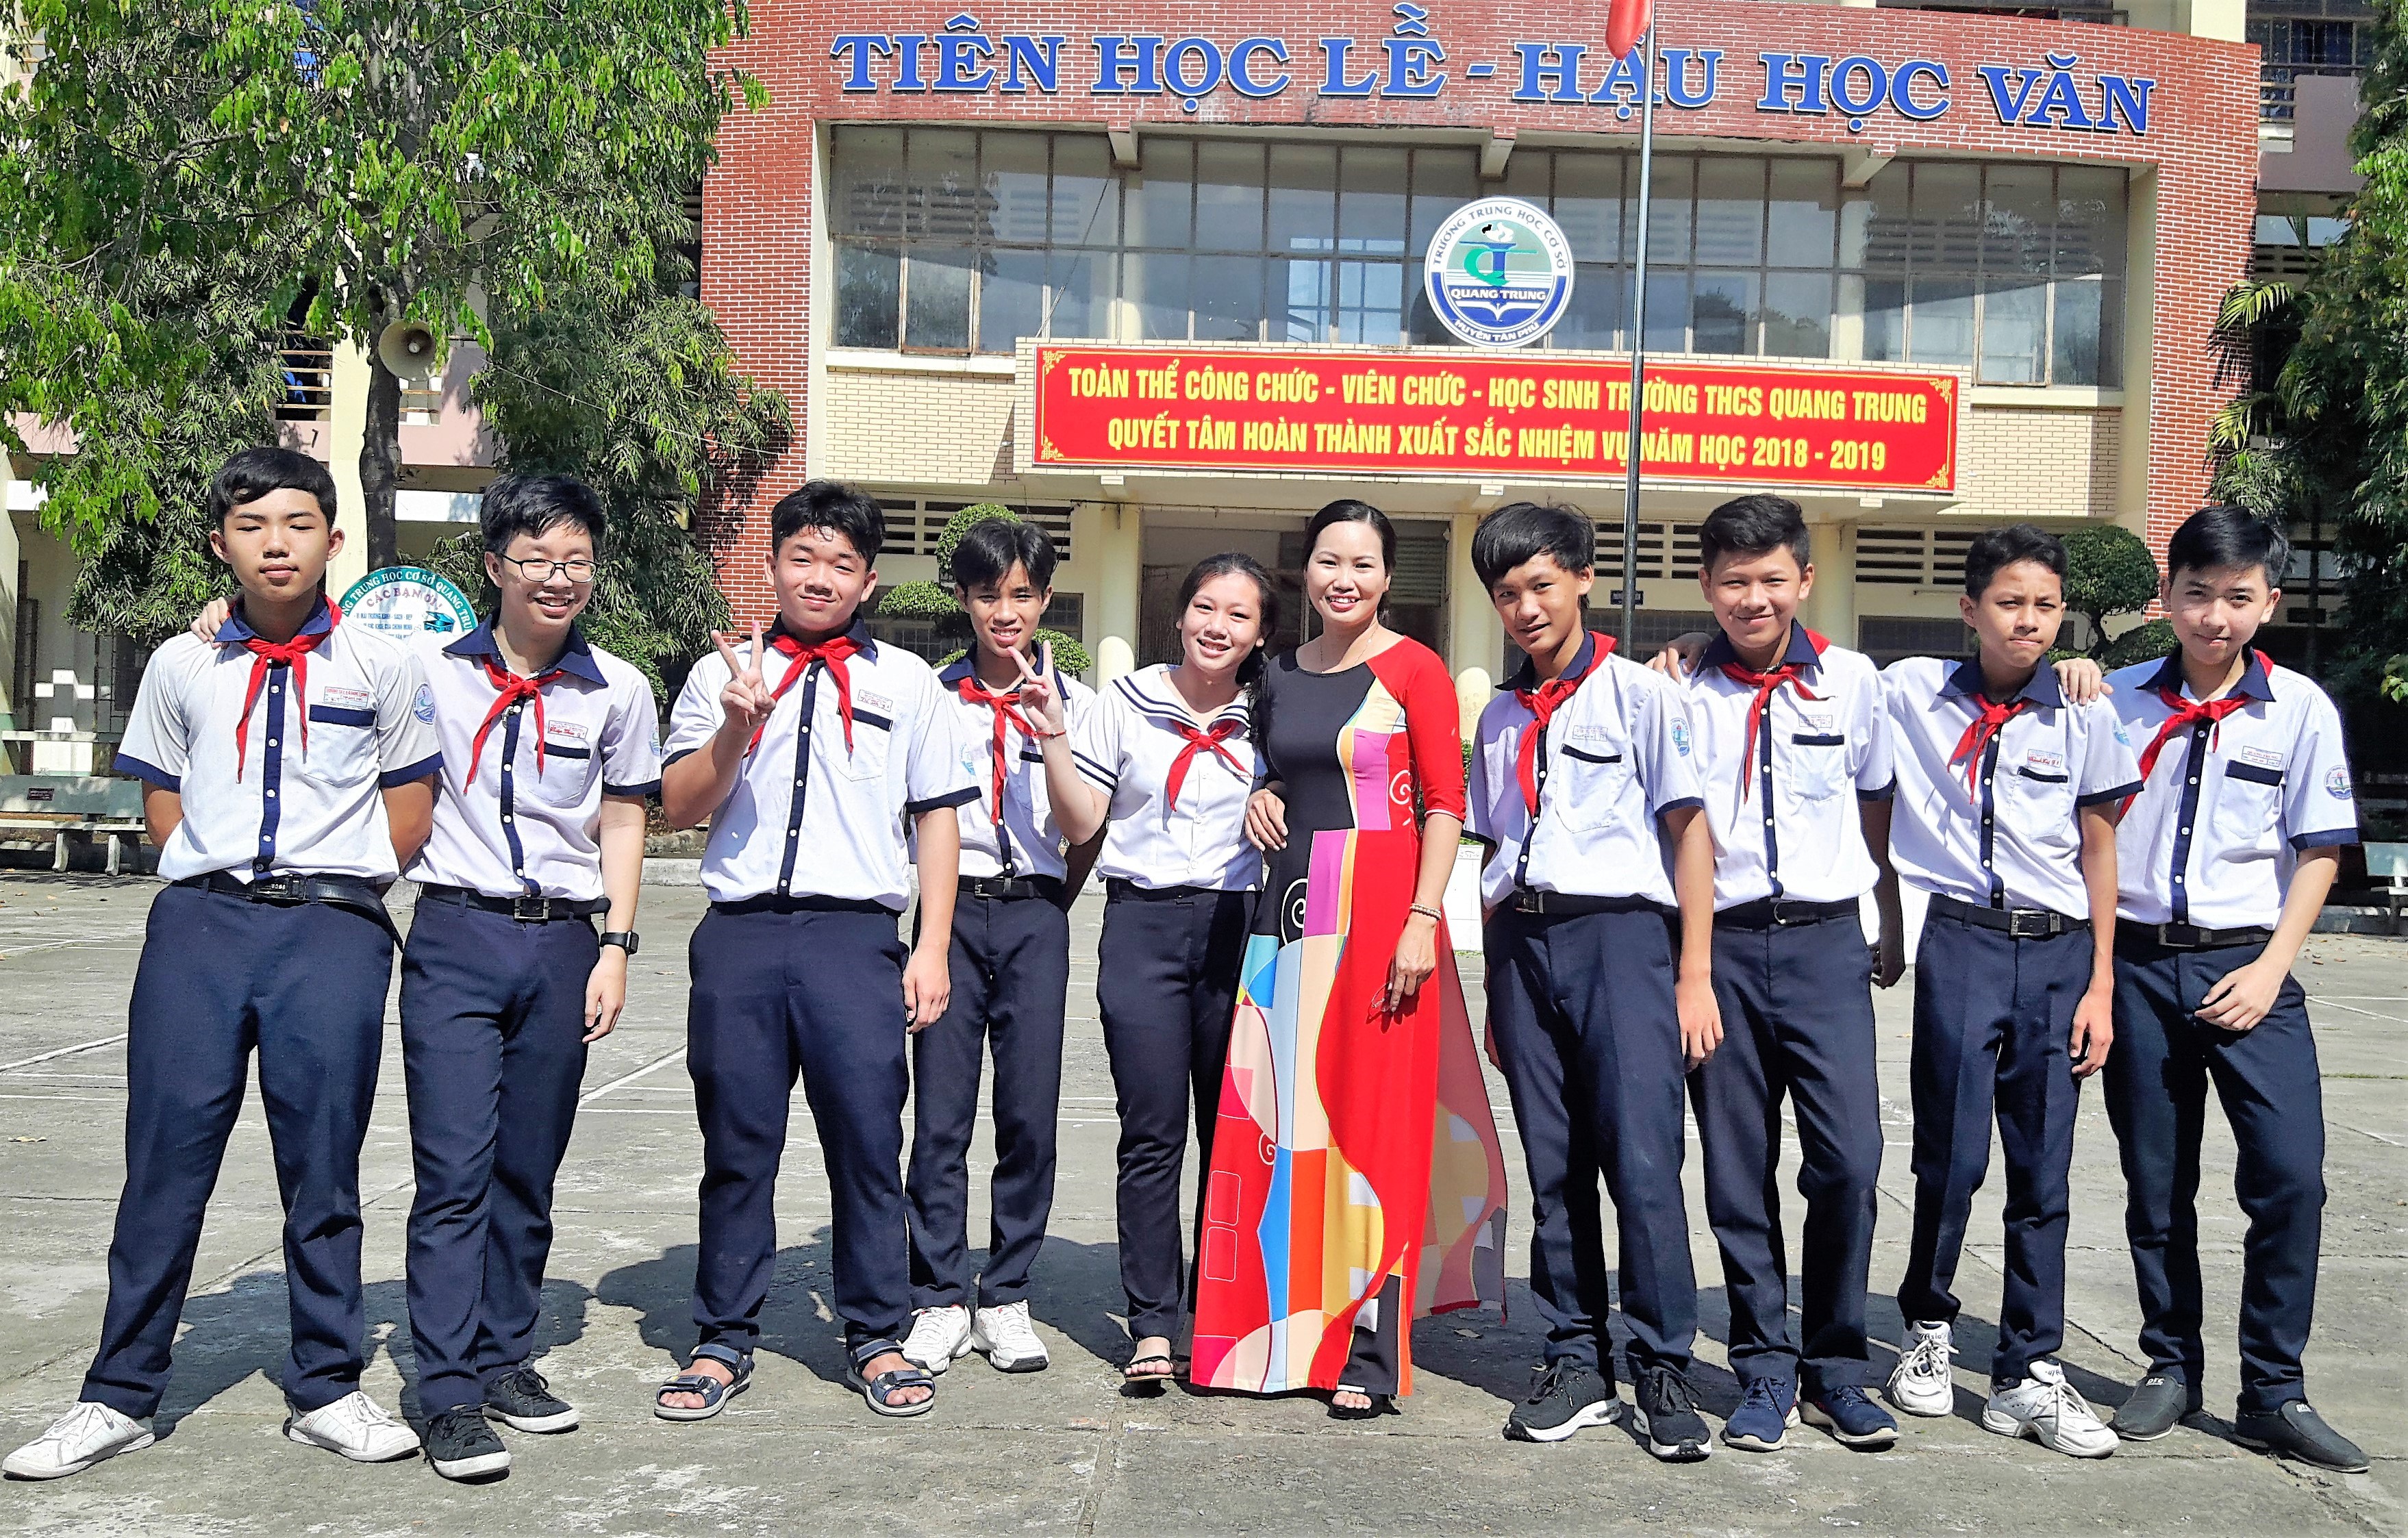 Cô giáo Trương Thị Trâm Anh, luôn gần gũi, thân thiện với các em học sinh trong các hoạt động ngoại khóa.jpg